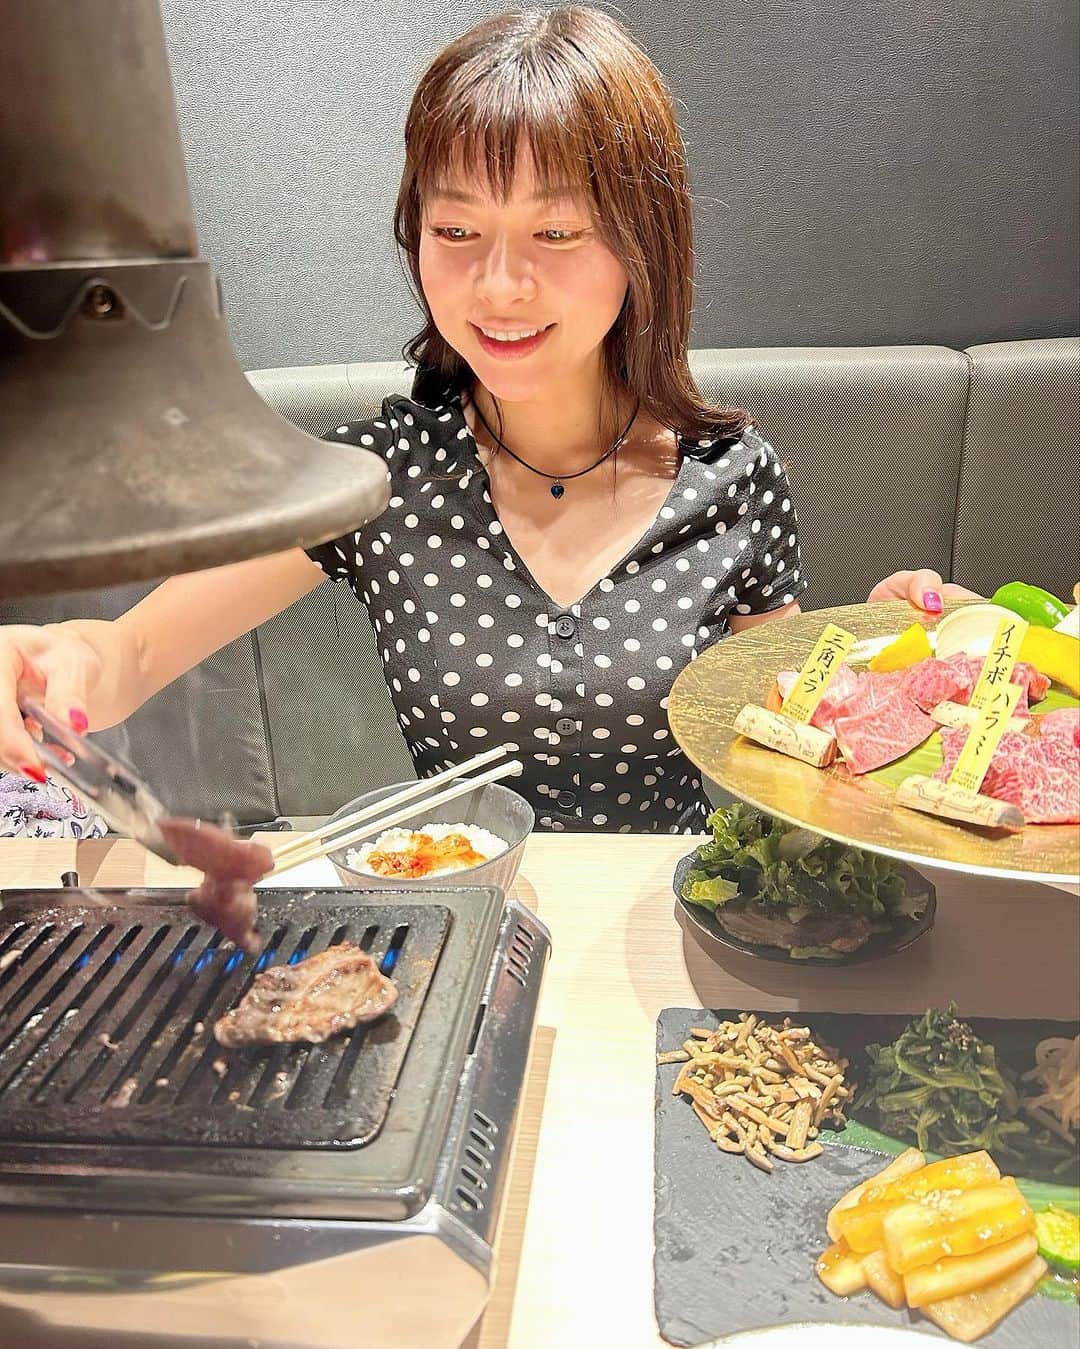 DJ MIYAのインスタグラム：「北海道・すすきのからこんにちわあ🎀  昨晩は 『和牛Labすすきの店』で焼肉dinnerしてきましたぁぁ❤️  PR @wagyu_labo_susukino  すすきの交差点からめっちゃ近いビルの3F  全室個室がありがたーいよねん♡  特選コース❤️  ◉チョレギサラダ お野菜がたっぷりいただけるコースは嬉しい⭐︎✨🌟  ◉自家製ナムルの盛り合わせ もやし、ゼンマイ、ホウレンソウ  ◉キムチの盛り合わせ 白菜、カクテキ、きゅうり  ◉焼肉　厳選焼肉3種 薄切り上牛タン 生ラム肩ロース クセがなく食べやすかった、きっと新鮮だから*\(^o^)/*  ◉和牛ホルモン  ◉国産和牛 希少部位4種 和牛カルビ 和牛ハラミ 和牛イチボ 和牛トモサンカク  どのお肉も上質のあぶらが口でとけてシンプルに美味しかった♡  ◉お食事 ライス  ◉スープ 牛テールスープ  上質なお肉の味がスープにとけこんでまた胡麻油の香りが食欲をそそる味( ◠‿◠ )  ◉デザート 選択  ゆずシャーベットや黒胡麻シャーベットもあっていい感じでした♡  単品でイイダコやゲタカルビを追加！ ゲタカルビのジューシーで旨みいっぱい⭐︎✨🌟  おすすめの焼肉屋さんだからみなさん札幌行った時食べてみてね*\(^o^)/*  #すすきのグルメ #すすきの焼肉 #札幌焼肉 #札幌グルメ #すすきのディナー #和牛Labすすきの店 #札幌旅行 #北海道観光 #札幌ディナー #札幌焼肉 #北海道旅行 #北海道旅行記 #すすきの #札幌 #札幌焼き肉 #焼肉屋さん #韓国料理好き #札幌おすすめ #トラベラー #トラベルインフルエンサー  #札幌観光スポット #札幌グルメ巡り #トリドリベース #グルメインフルエンサー #グルメインスタグラマー #グルメスタグラマー  #マイトリップMIYA」